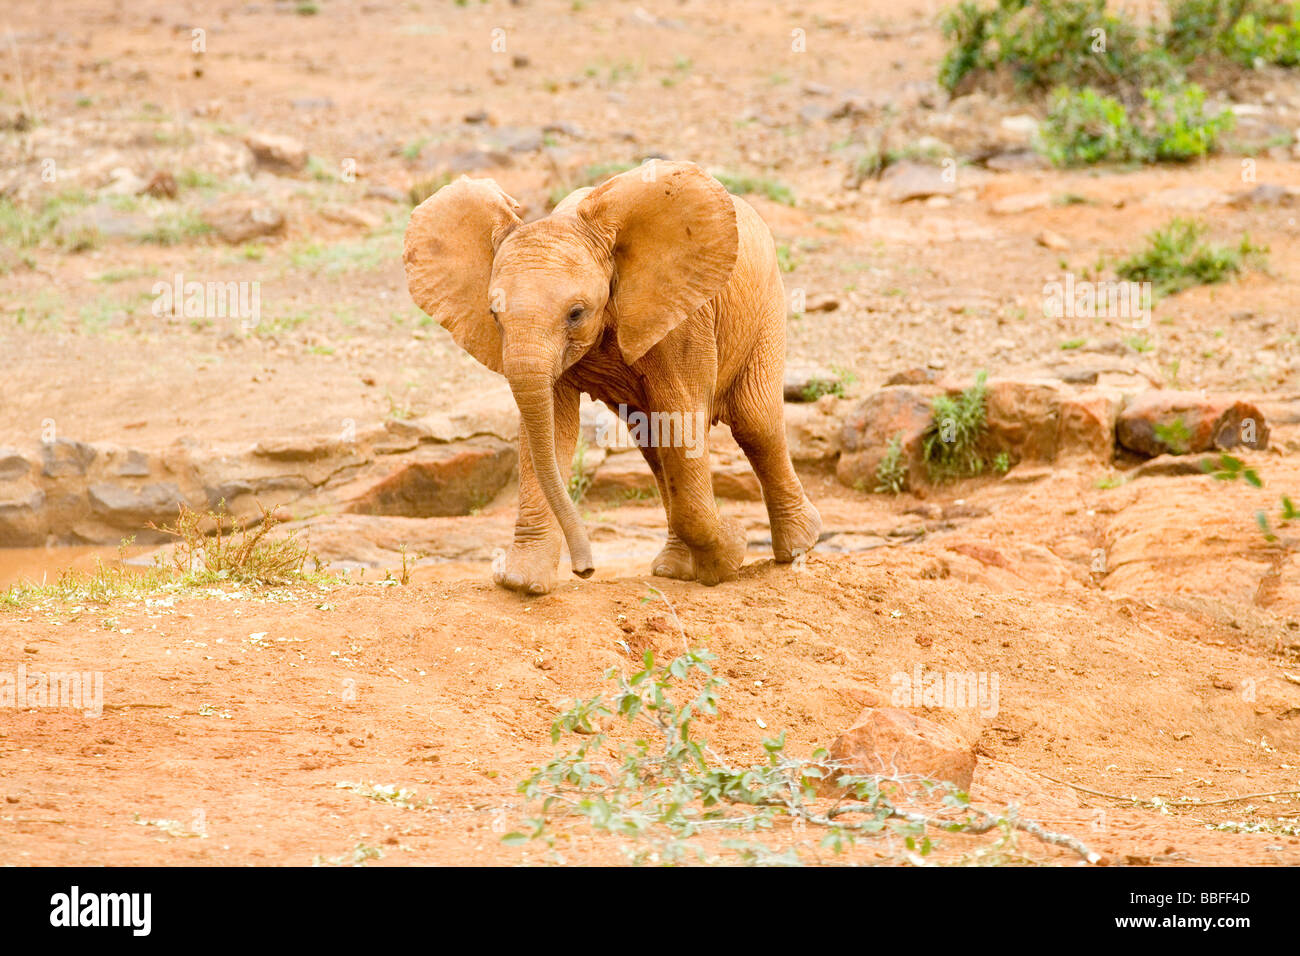 Jeune orpheline bébé éléphant au David Sheldrick Wildlife Trust sanctuaire dans Nairobi Kenya Afrique de l'Est nature faune animal mammifère n Banque D'Images